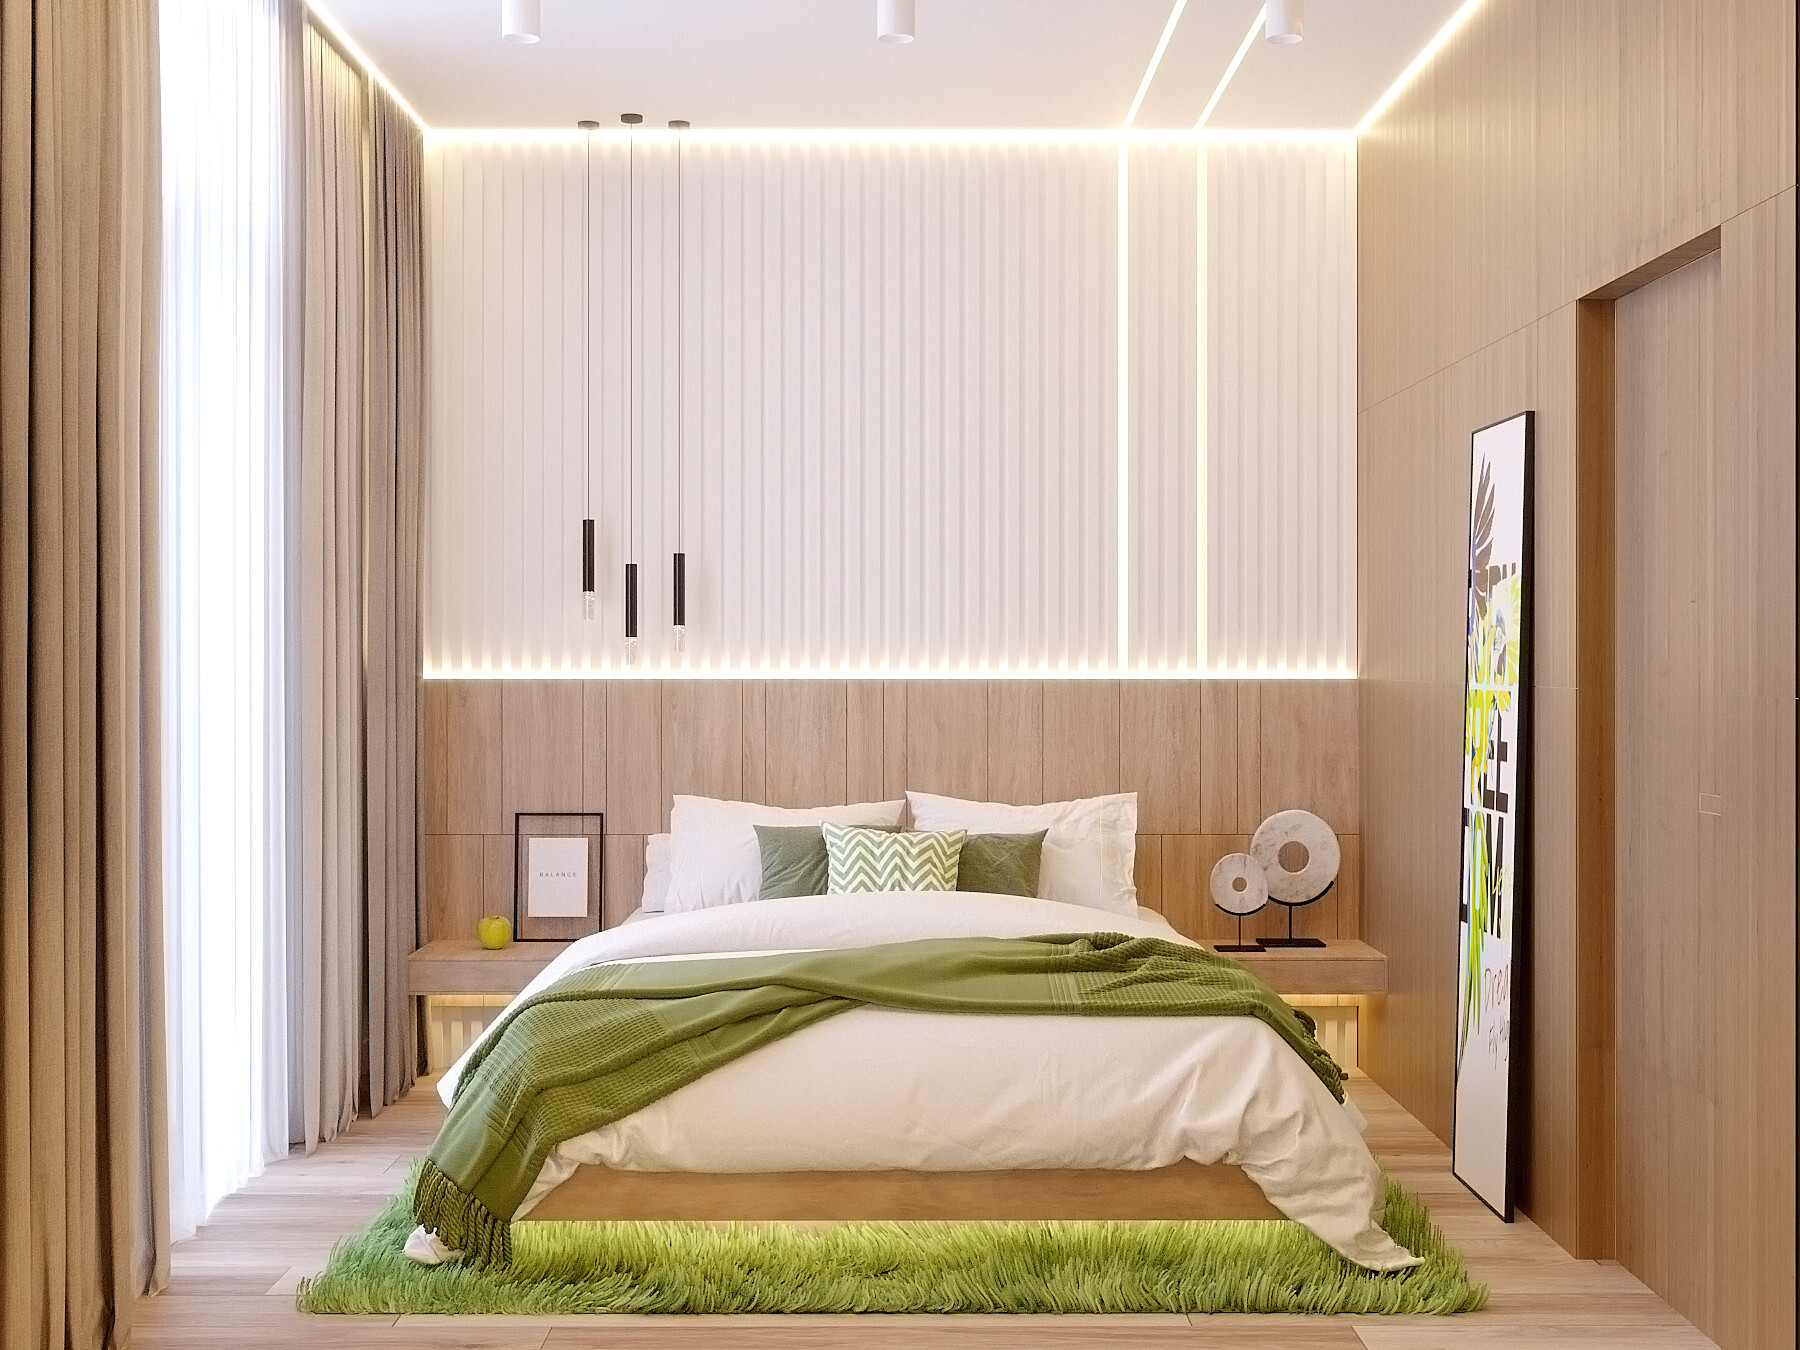 Интерьер спальни с рейками с подсветкой, подсветкой настенной, подсветкой светодиодной, светильниками над кроватью и с подсветкой